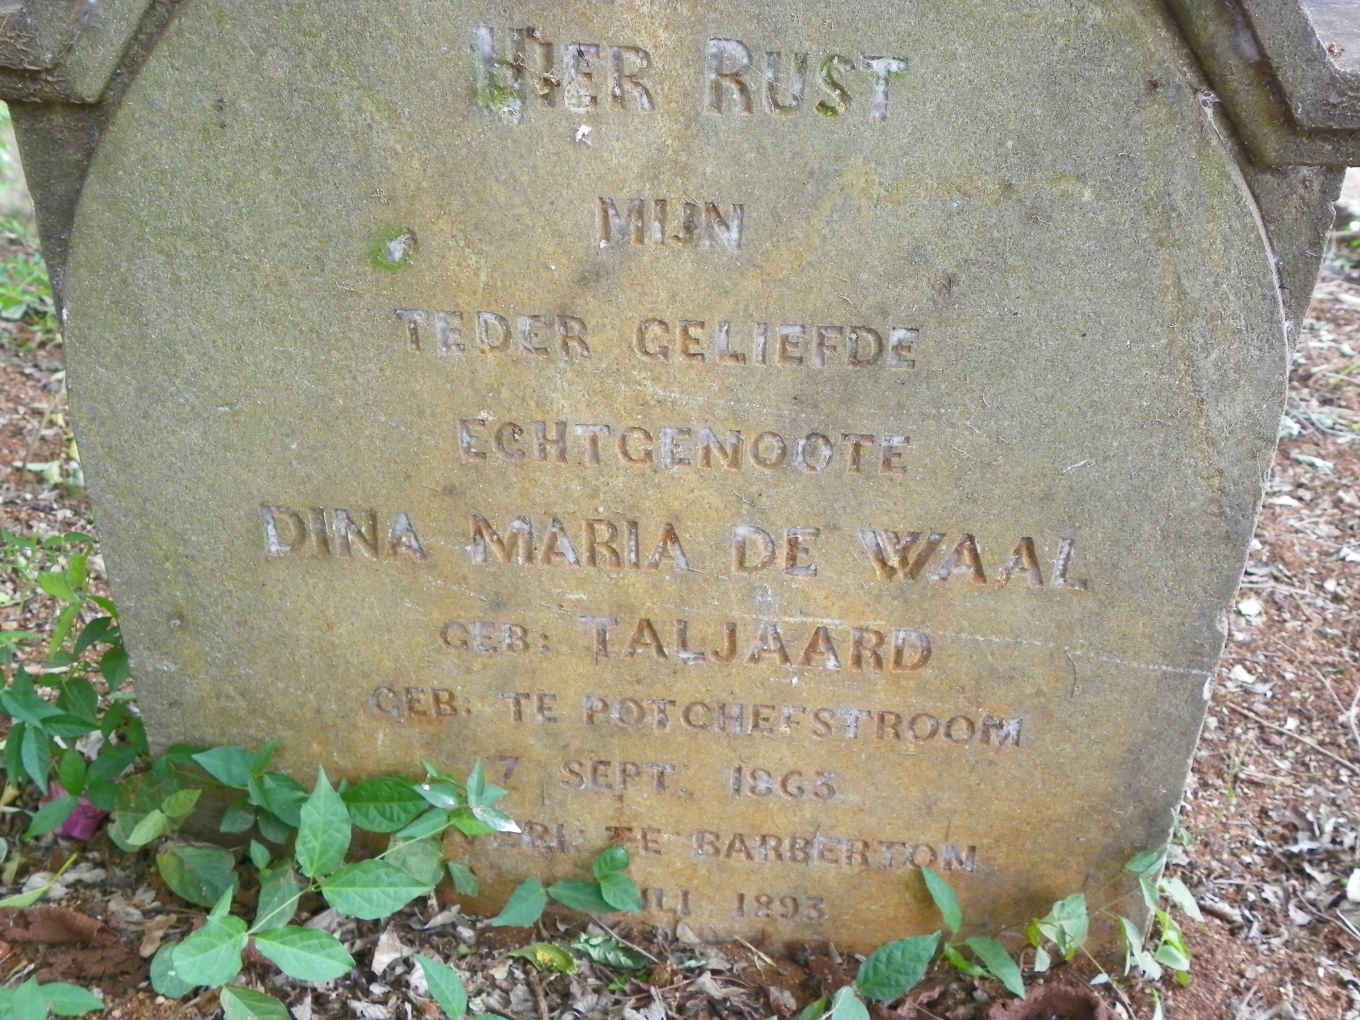 WAAL Dina Maria, de nee TALJAARD 1863-1893